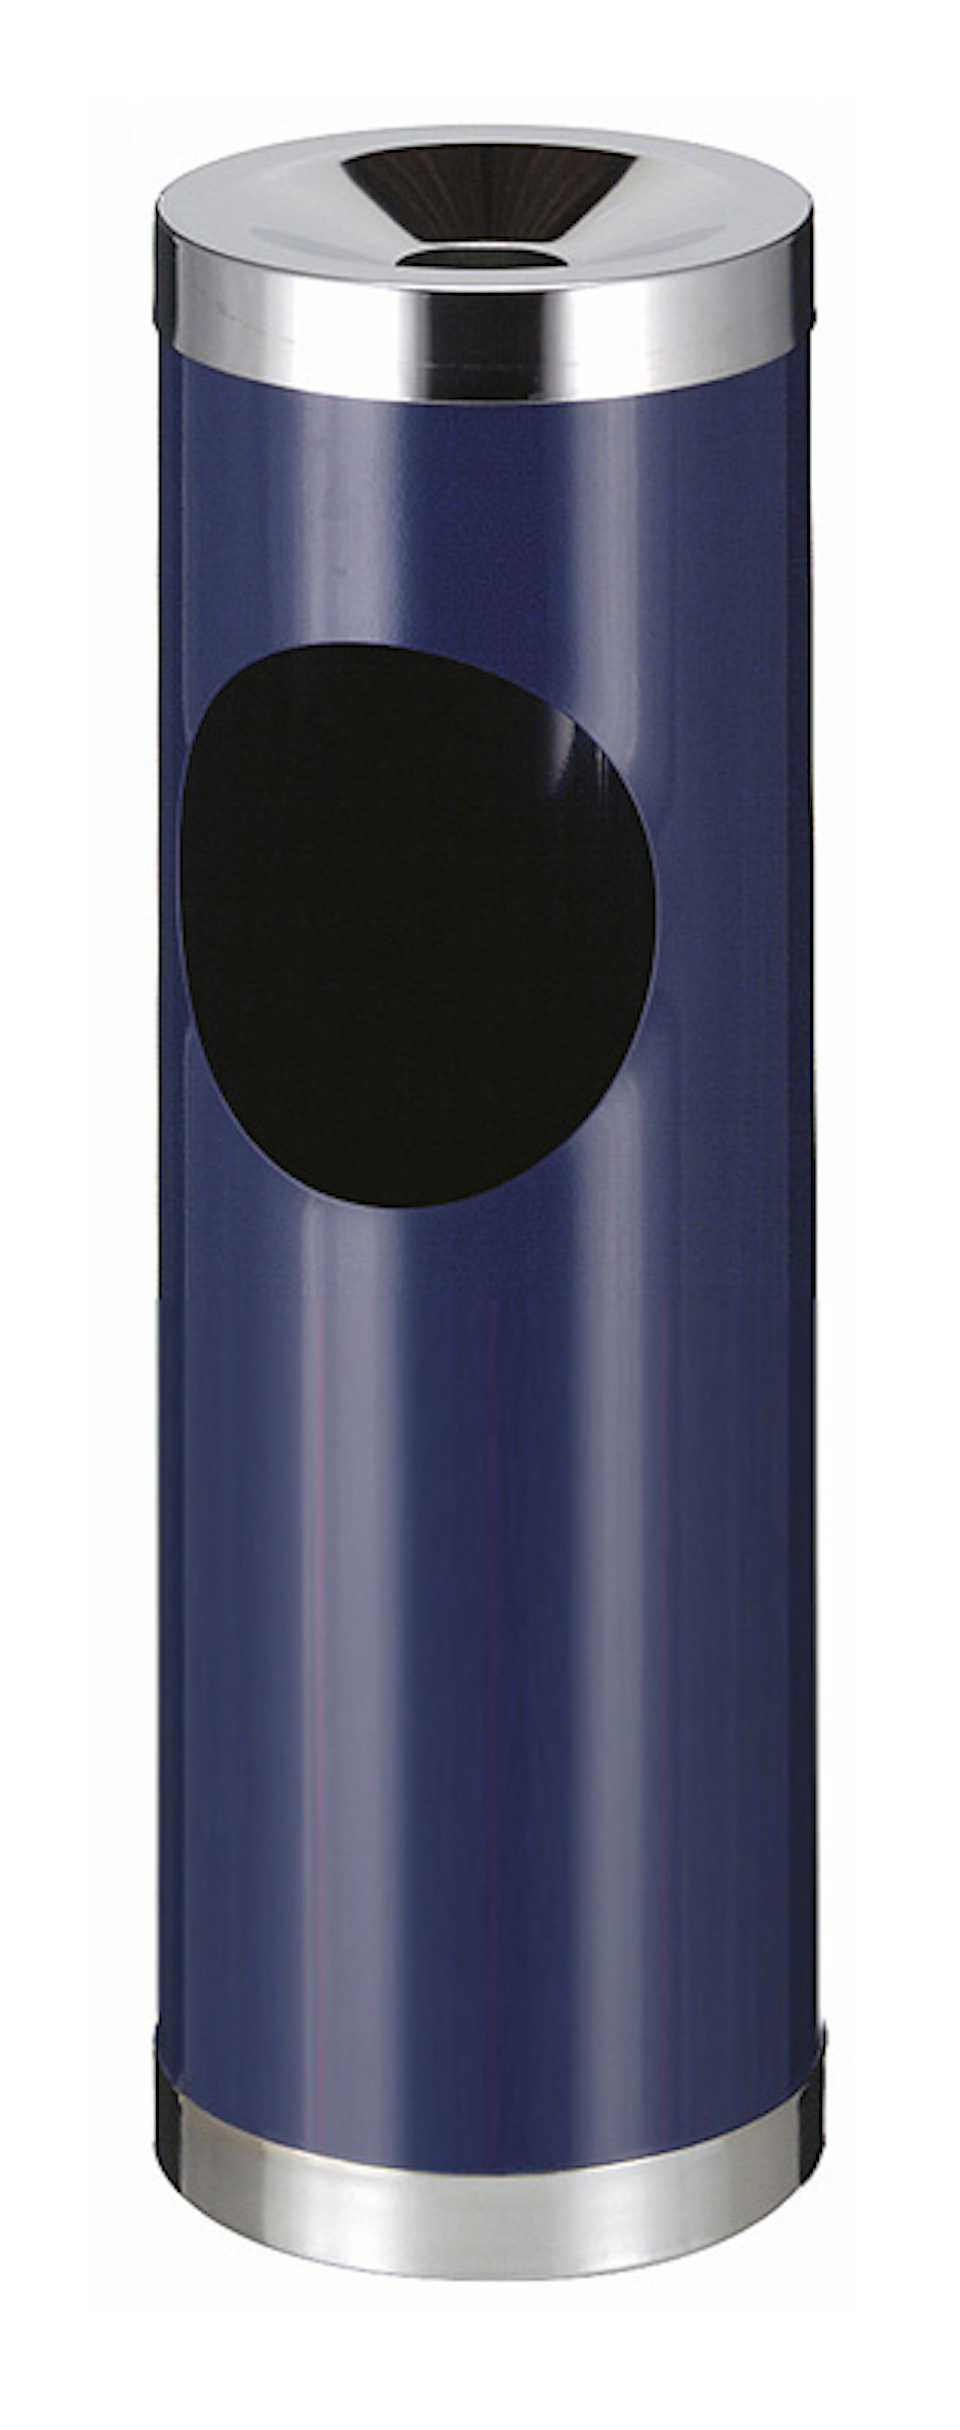 Runder Metall Kombiascher mit ovaler Einwurfsöffnung | 30 Liter, HxØ 72x24cm | Blau